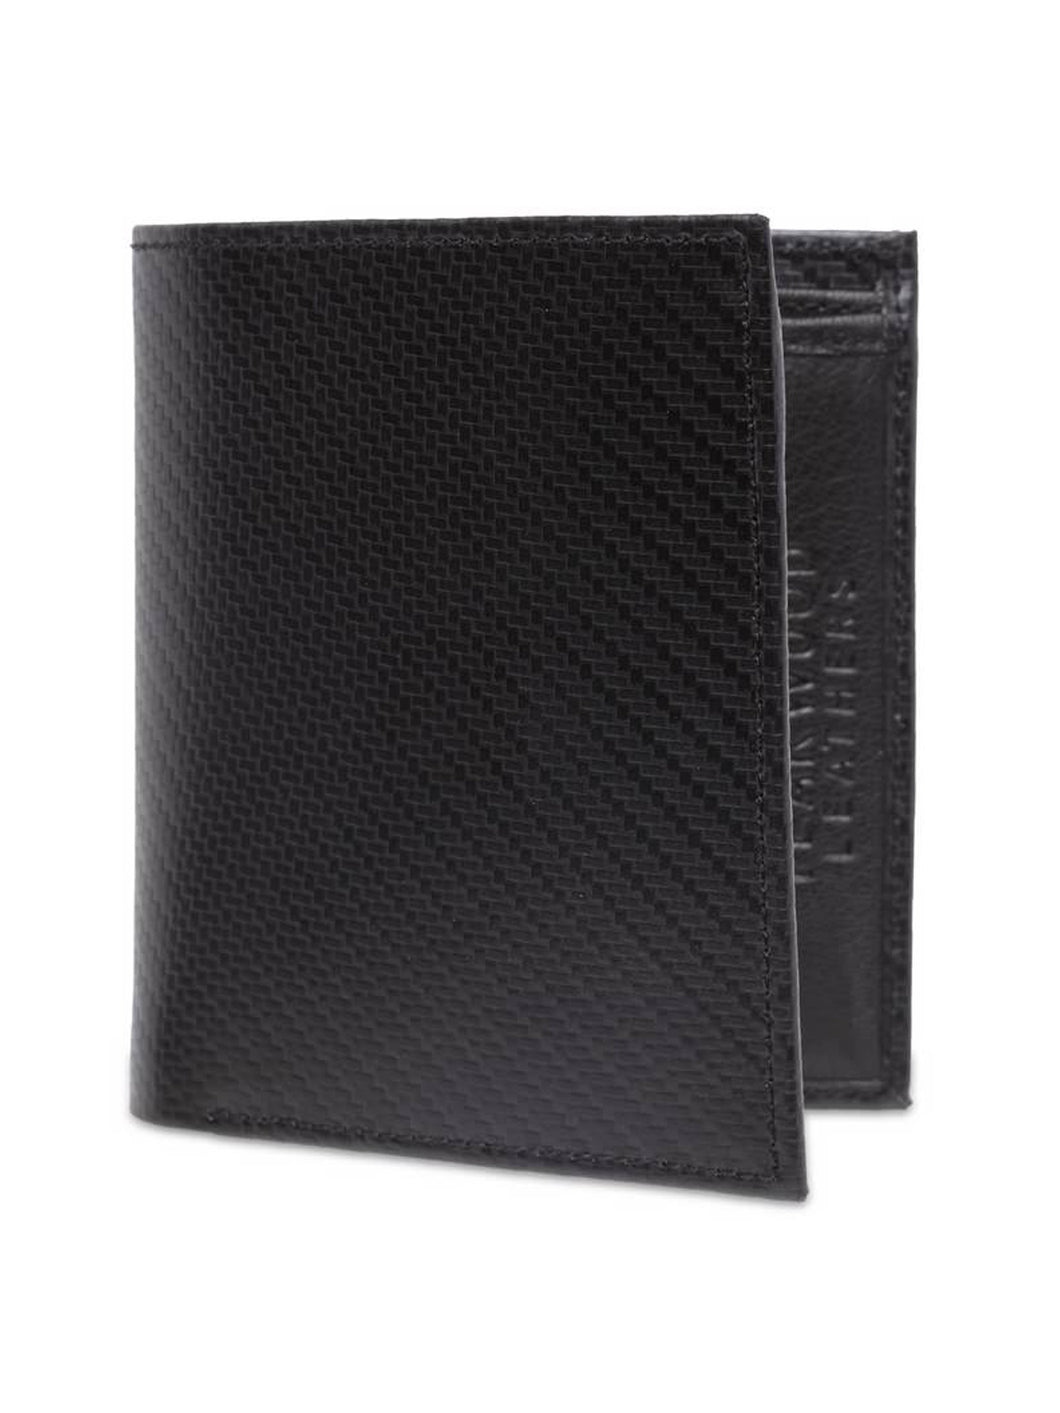 Teakwood Genuine Leather Wallet - Black